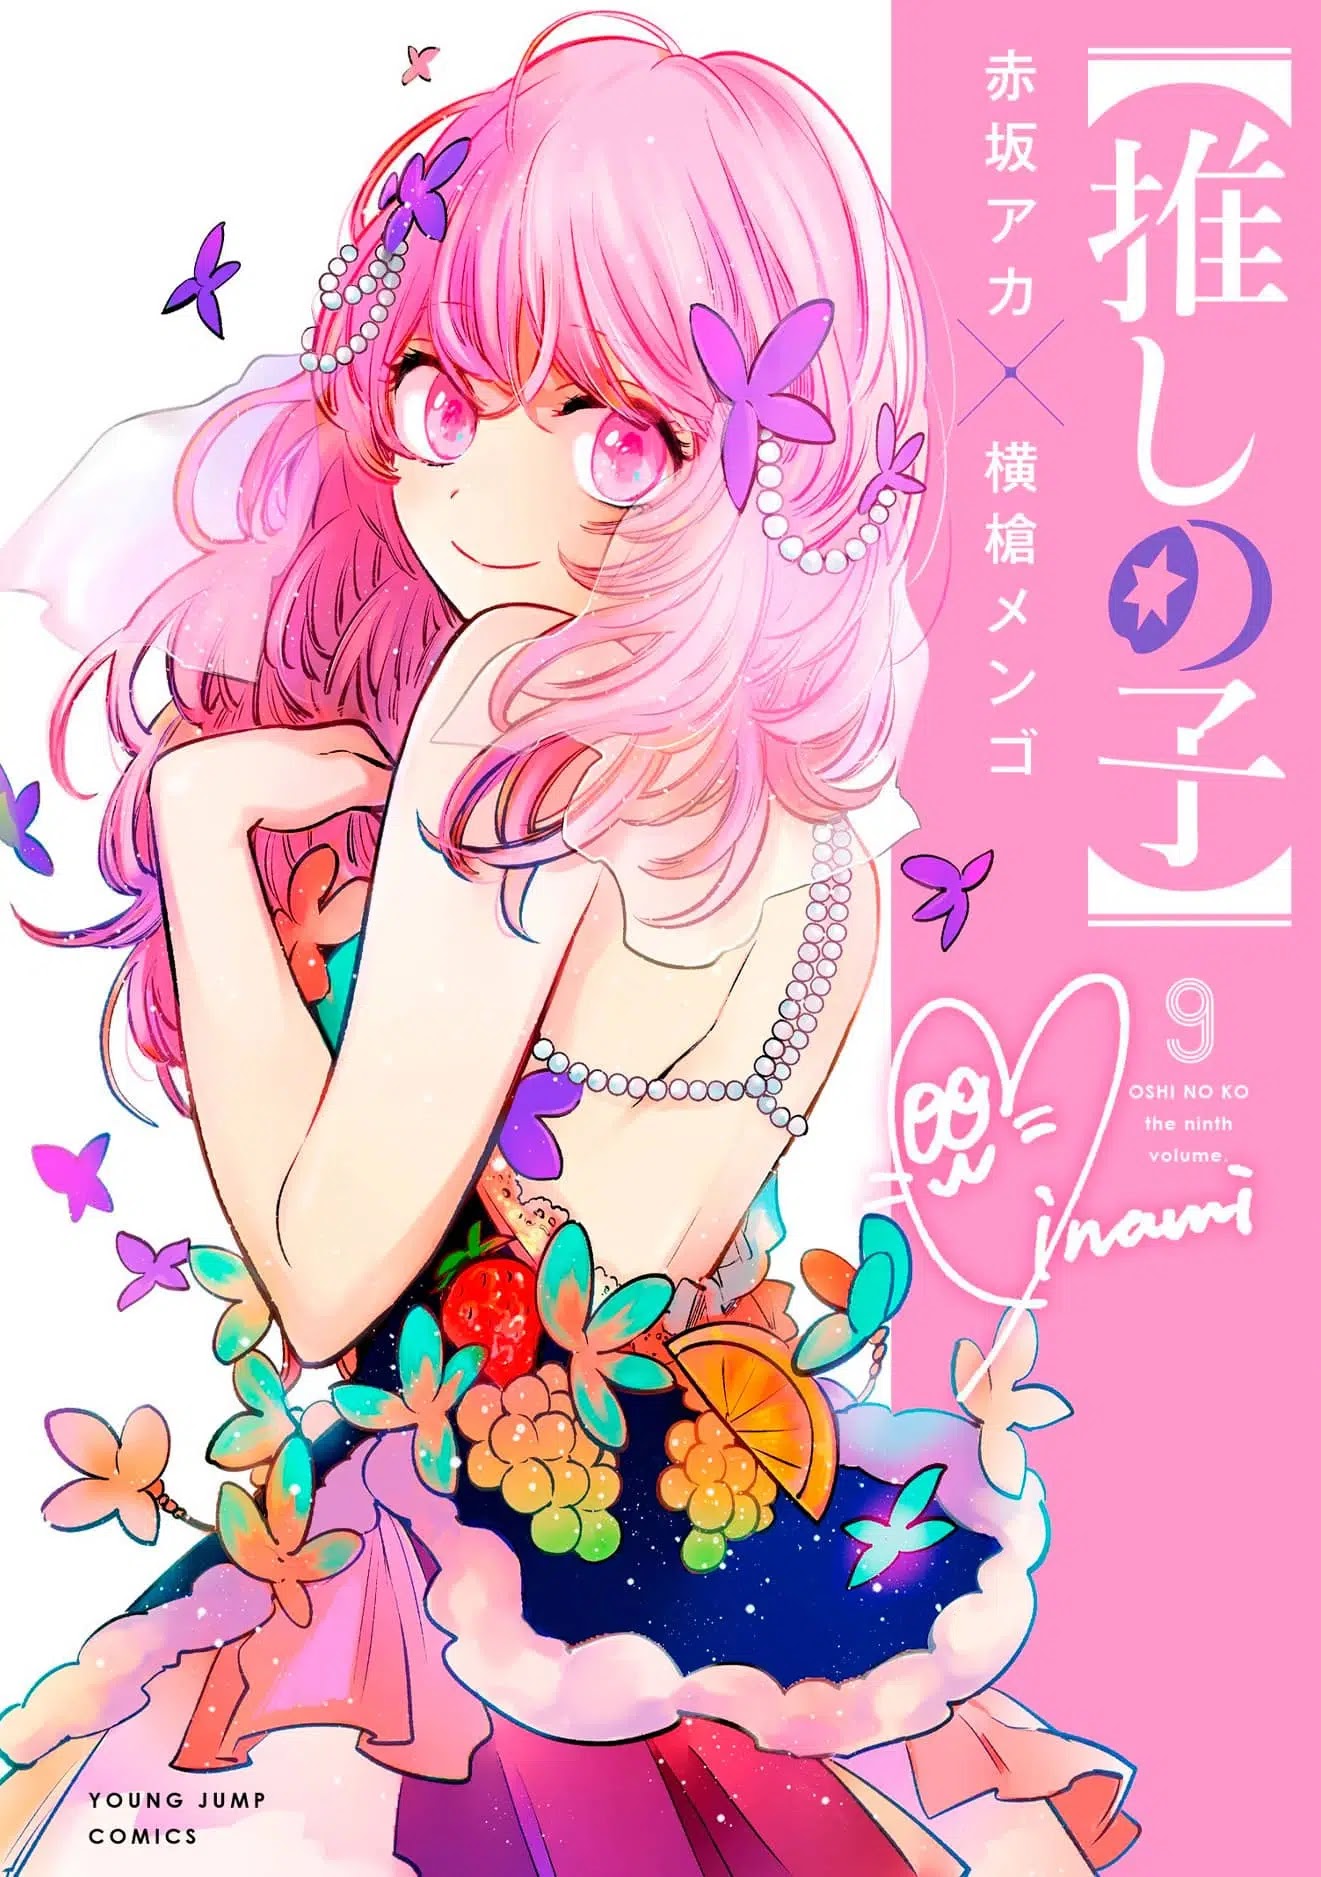 El manga Oshi no Ko supero las 3.8 millones de copias